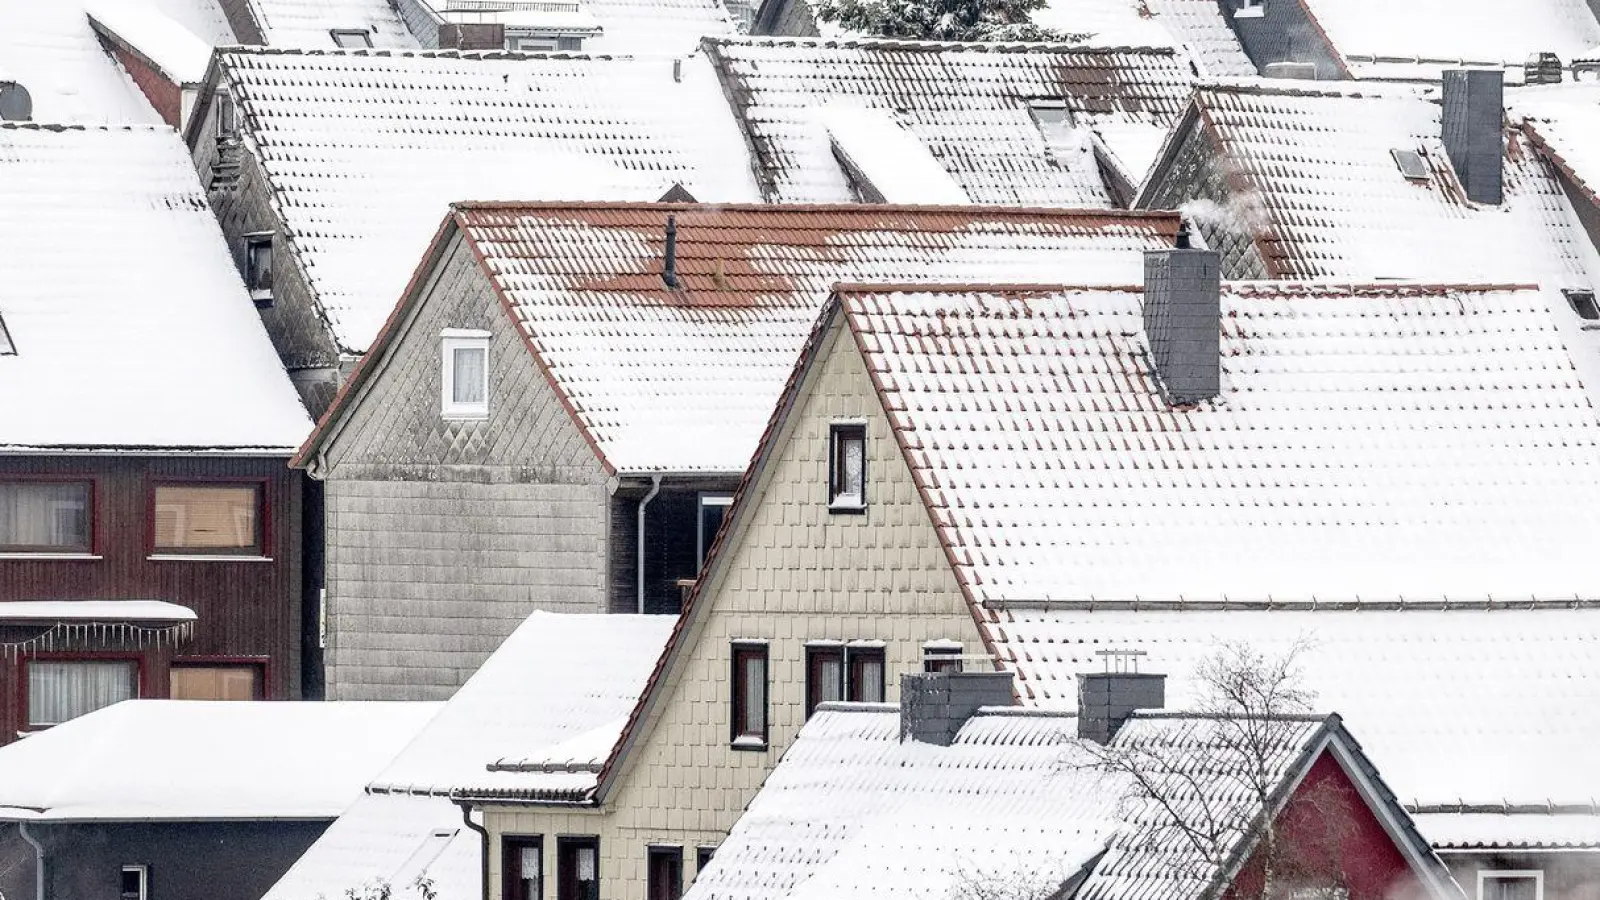 Im Vergleich zum Vorjahreszeitraum sind Wohnungen und Häuser im Schnitt um 10,2 Prozent günstiger geworden. (Foto: Swen Pförtner/dpa)